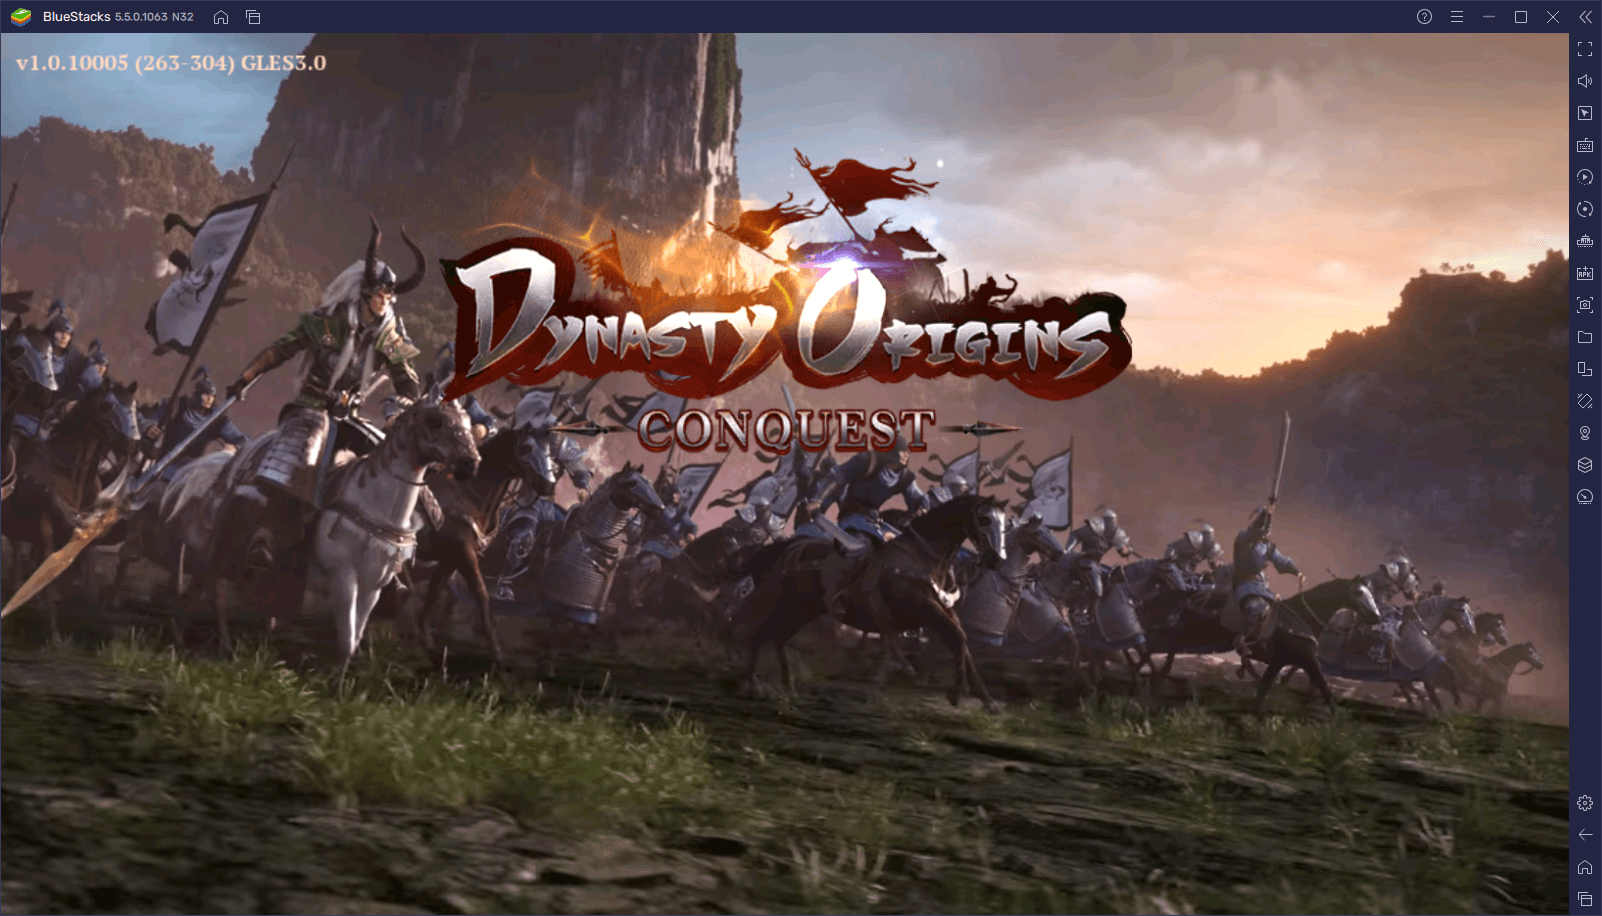 Le Guide du Reroll dans Dynasty Origins: Conquest – Comment Débloquer les Meilleurs Personnages Dès le Début